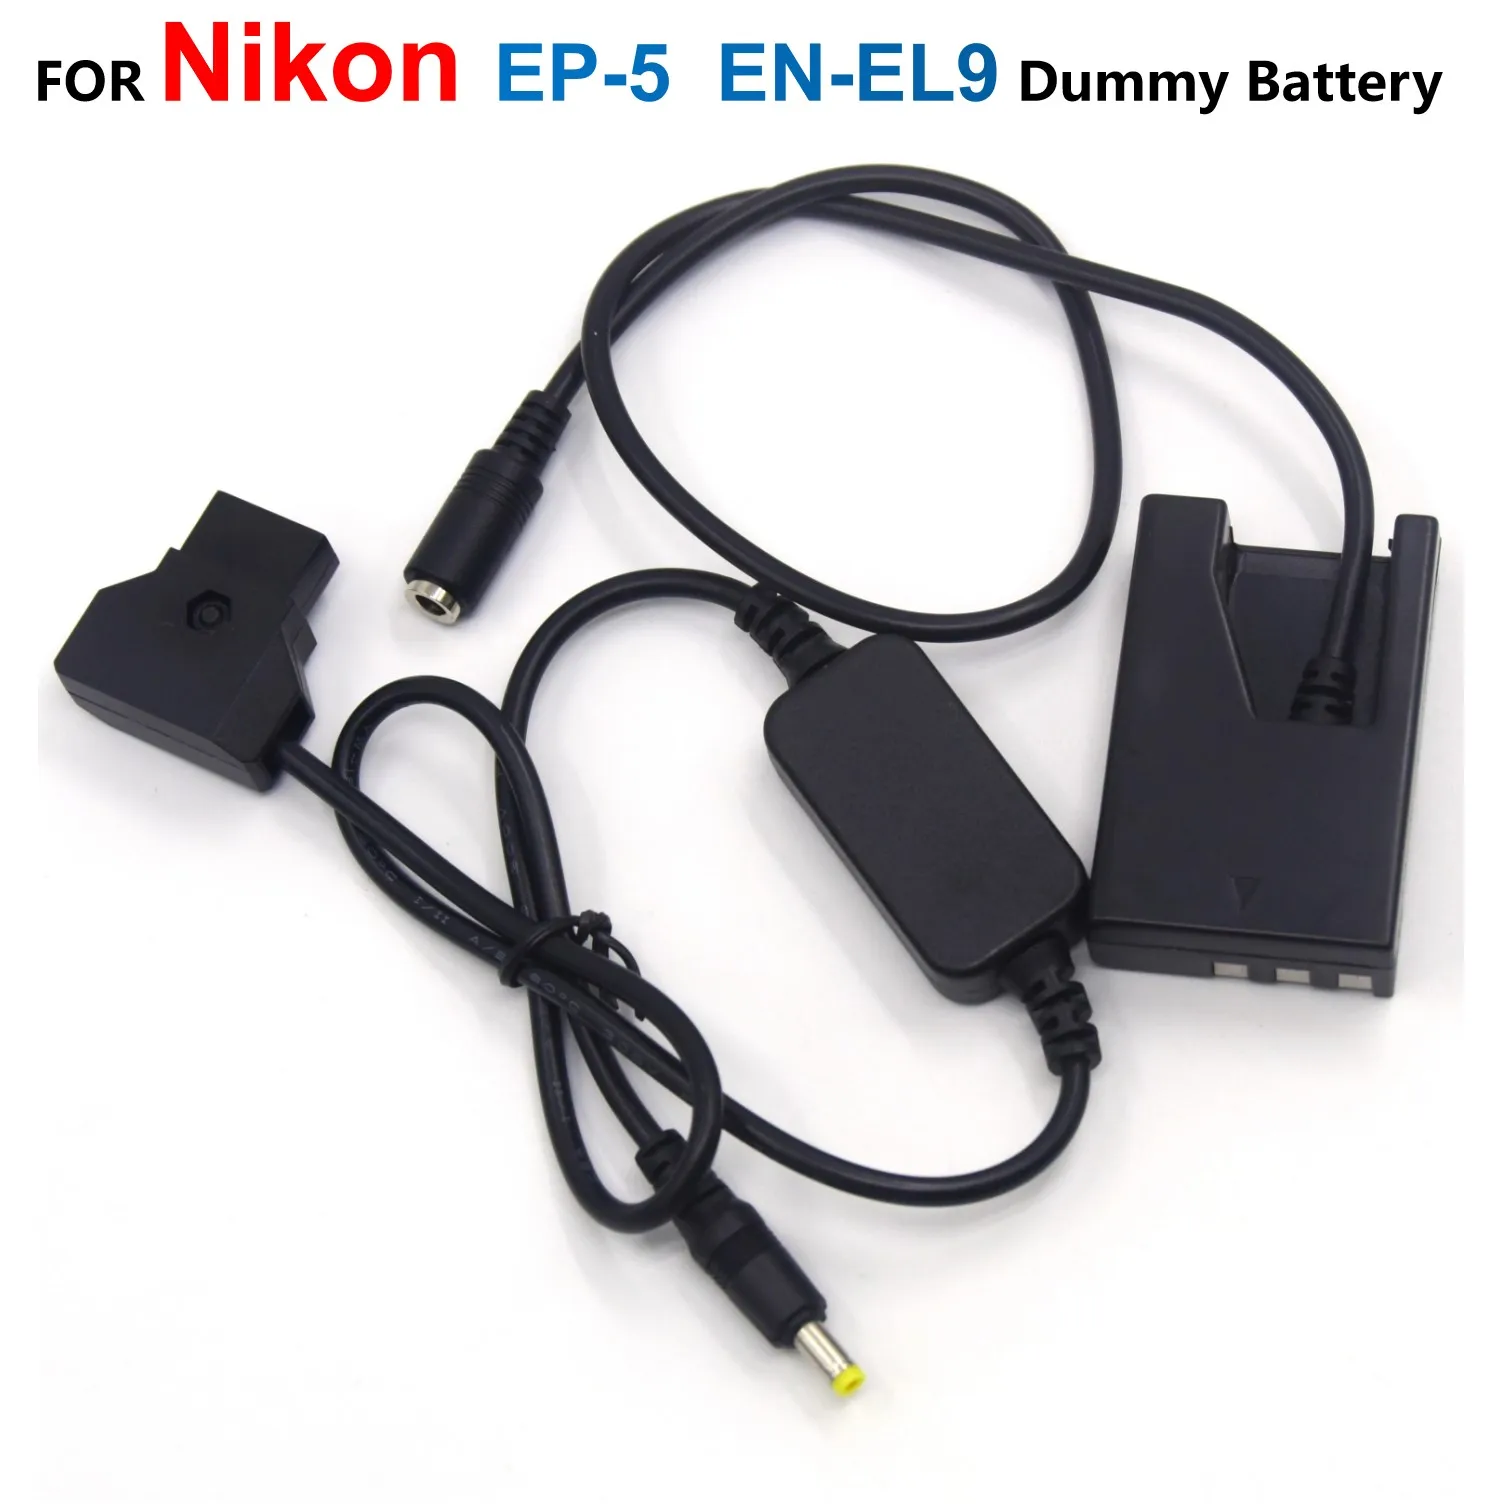 

EP-5 DC Coupler EN-EL9 Dummy Battery + D-TAP Dtap 12-24V Power Step-down Cable EH-5A For Nikon D40 D40X D60 D3000 D5000 Camera